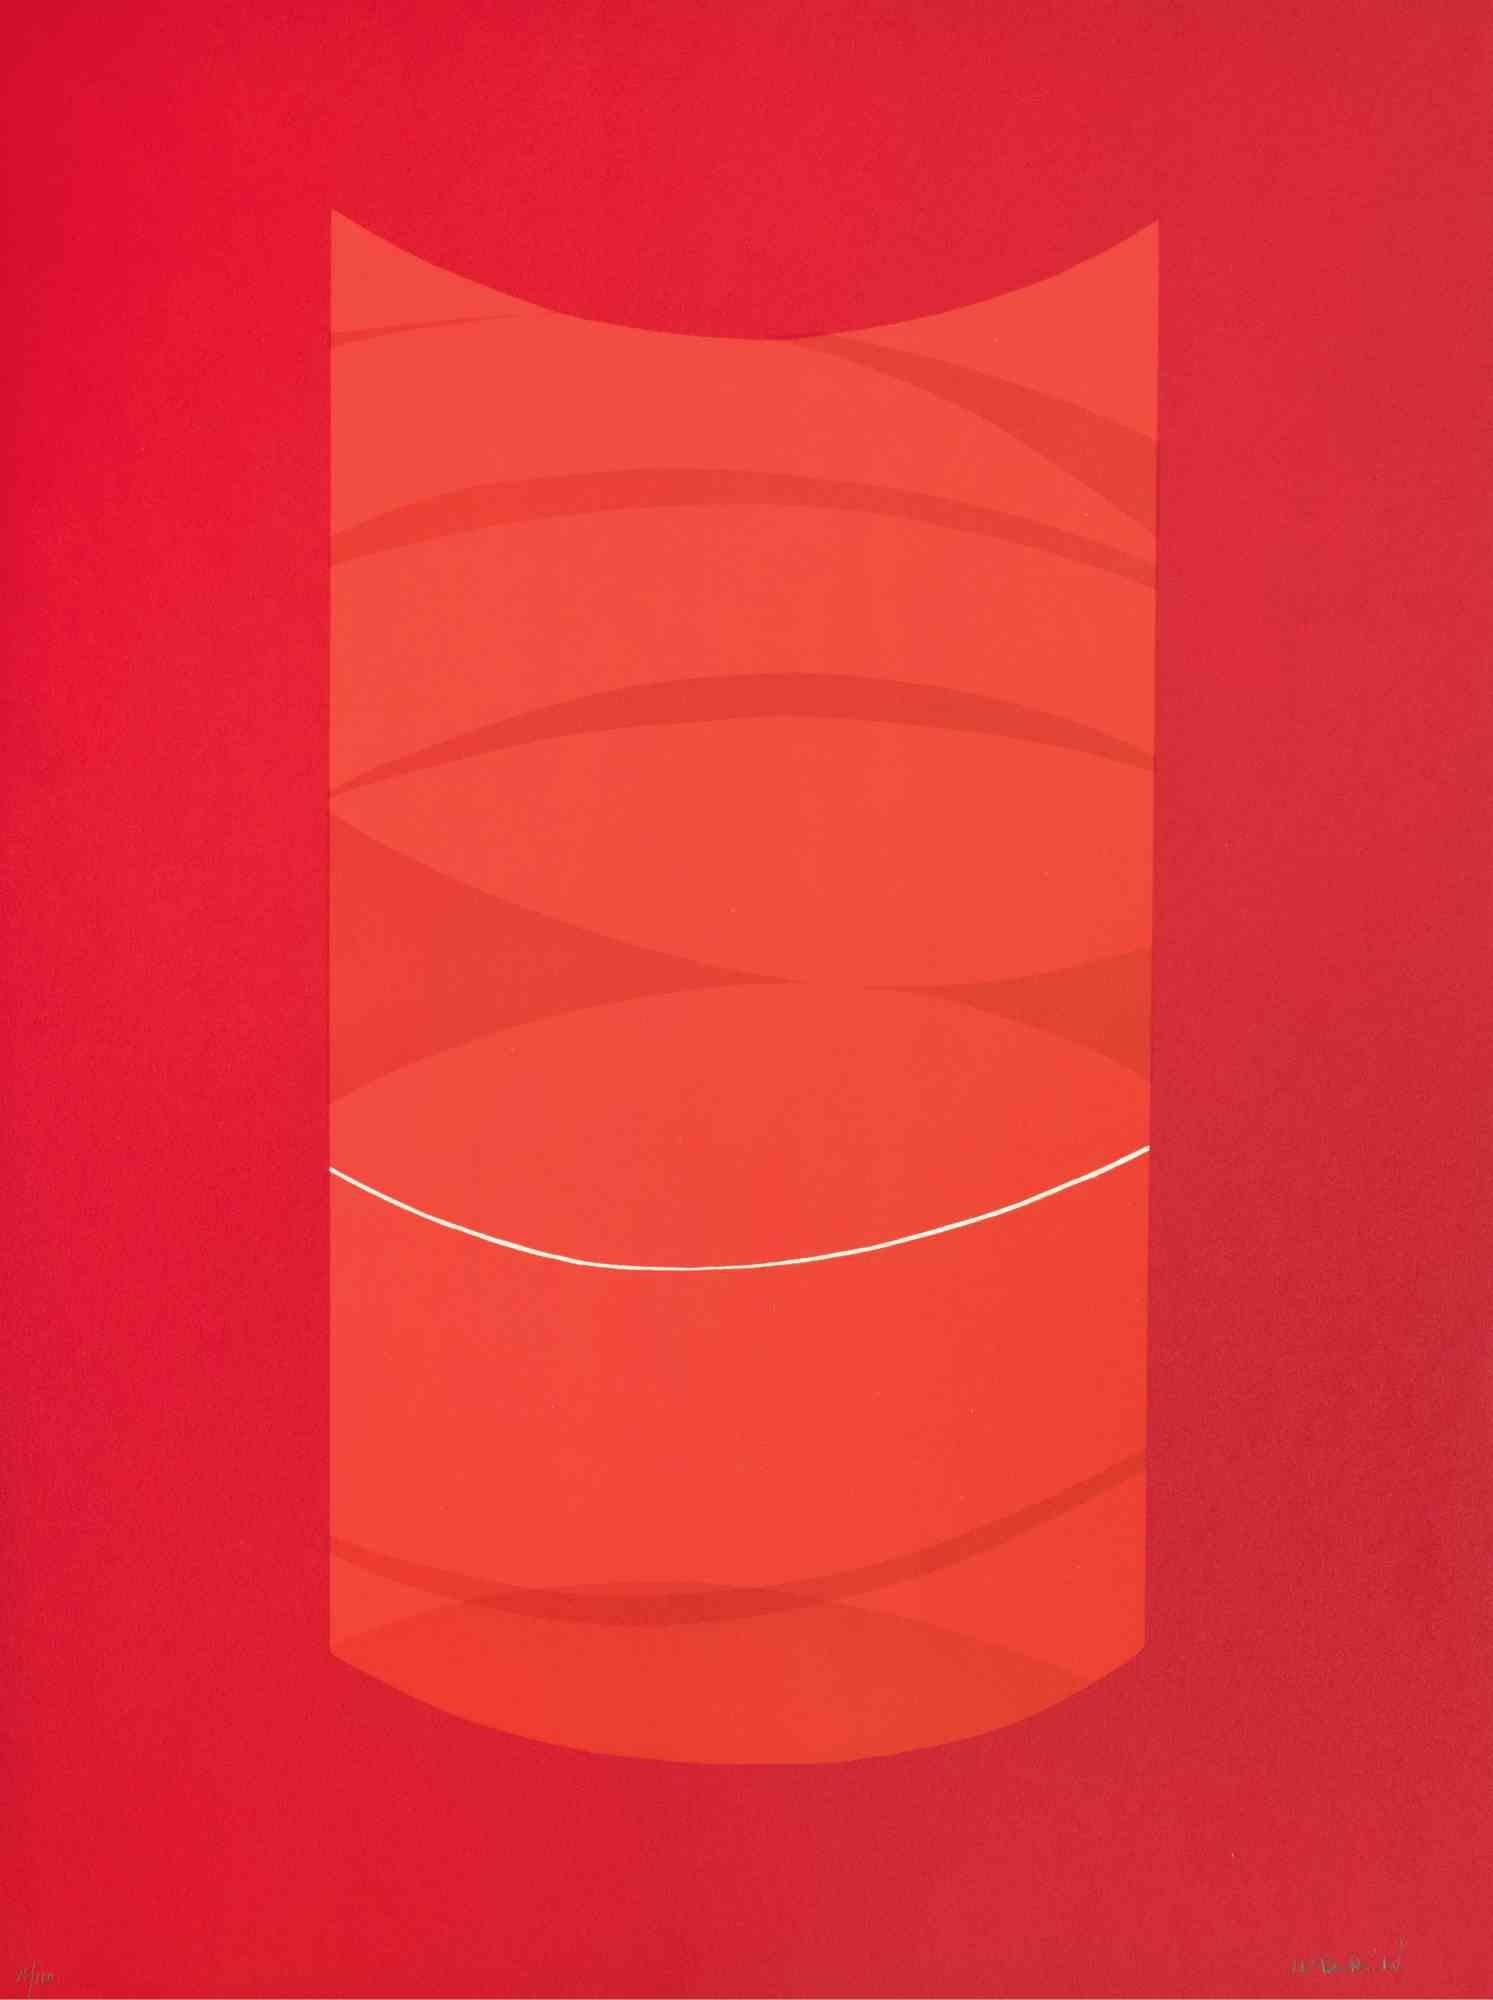 Red One est une œuvre d'art contemporain réalisée par Lorenzo Indrimi dans les années 1970.

Lithographie en couleurs mélangées.

Signé à la main et daté dans la marge inférieure.

Édition de 85/100. 